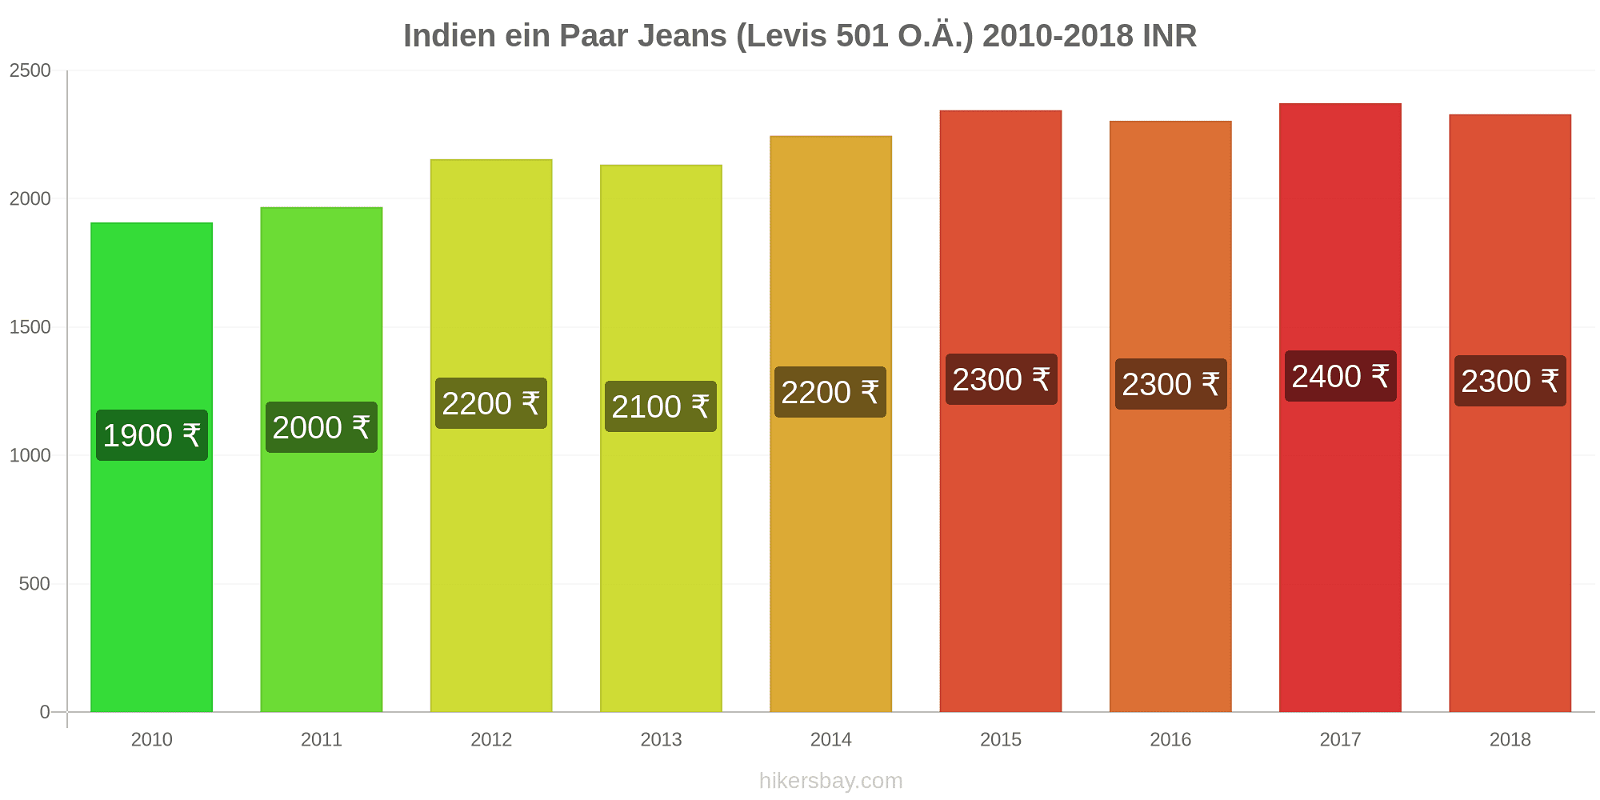 Indien Preisänderungen 1 Paar Jeans (Levis 501 oder ähnlich) hikersbay.com